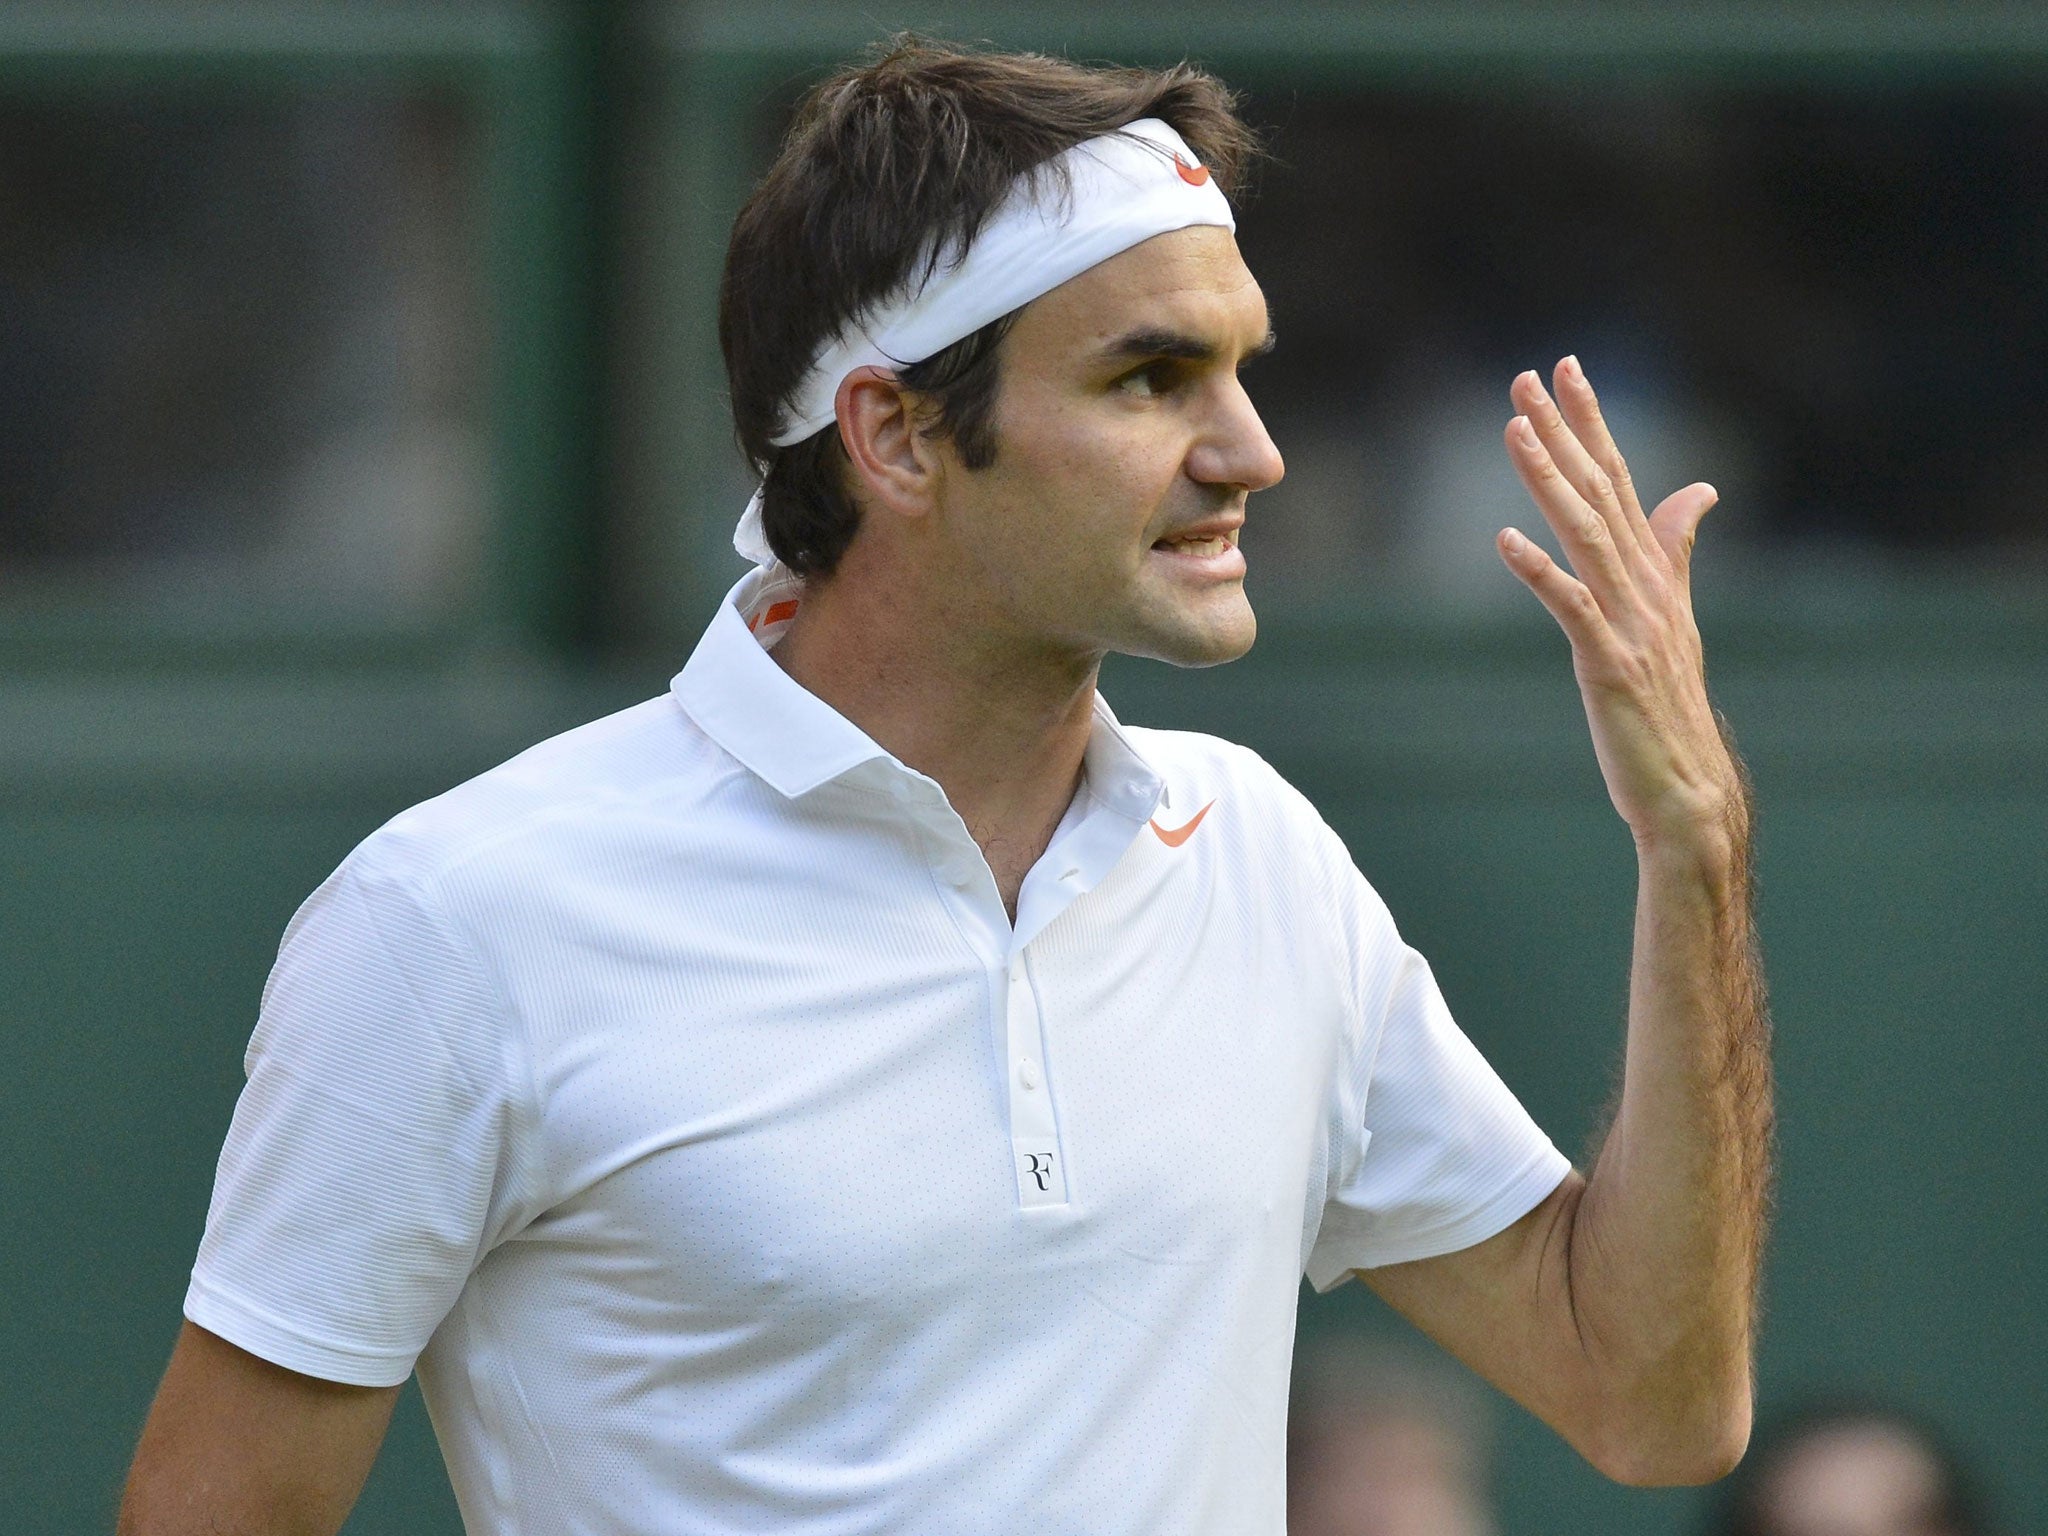 Roger Federer shows his frustration